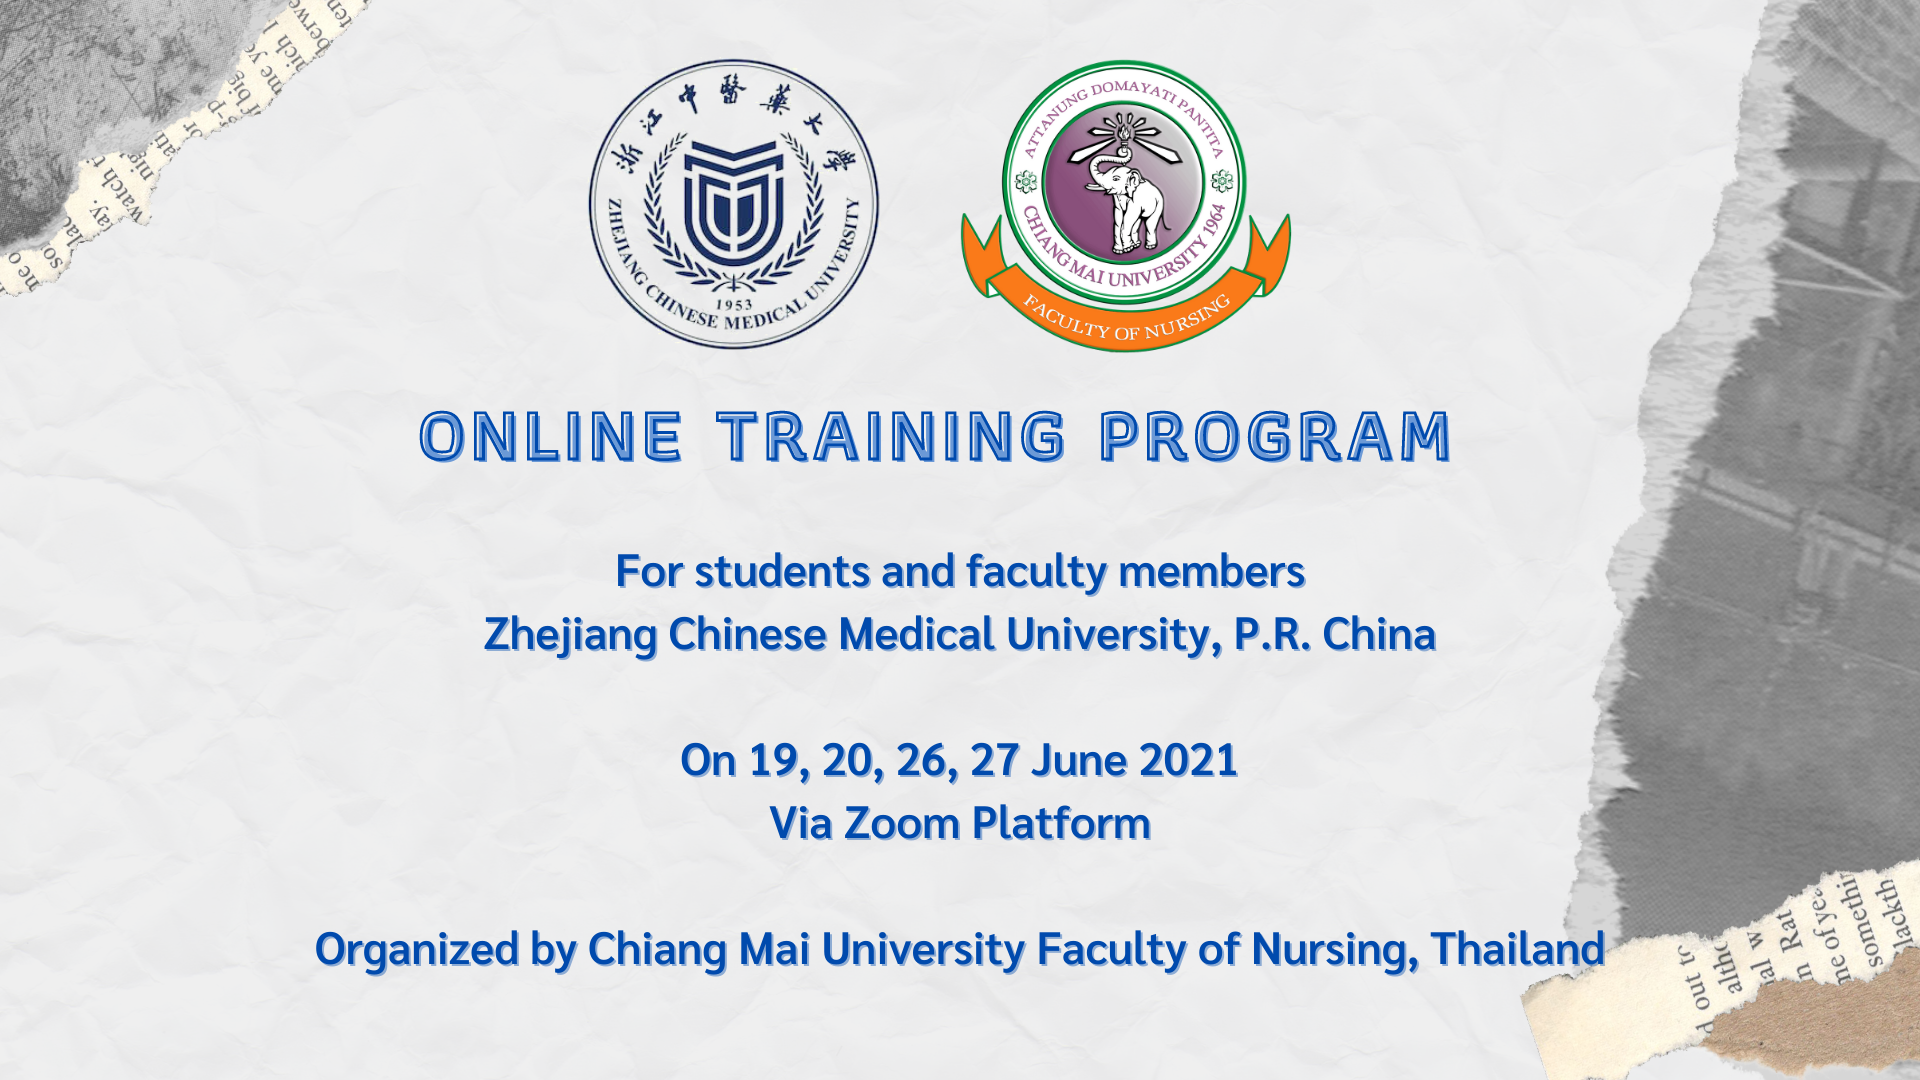 
	อบรมออนไลน์แก่คณาจารย์และนักศึกษา Zhejiang Chinese Medical University สาธารณรัฐประชาชนจีน
